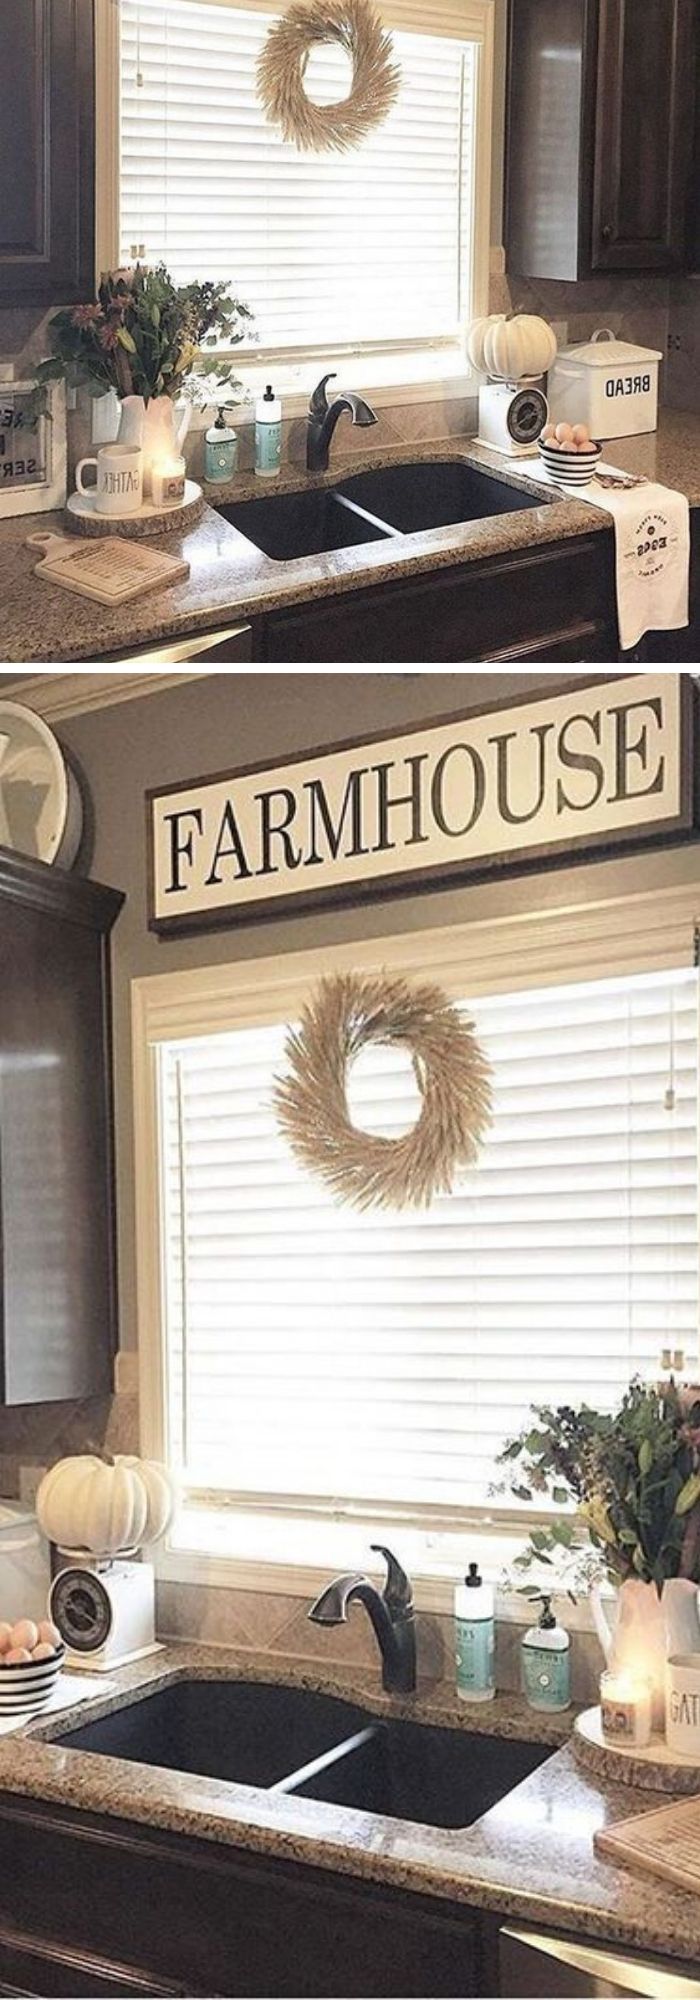 28 farmhouse kitchen ideas